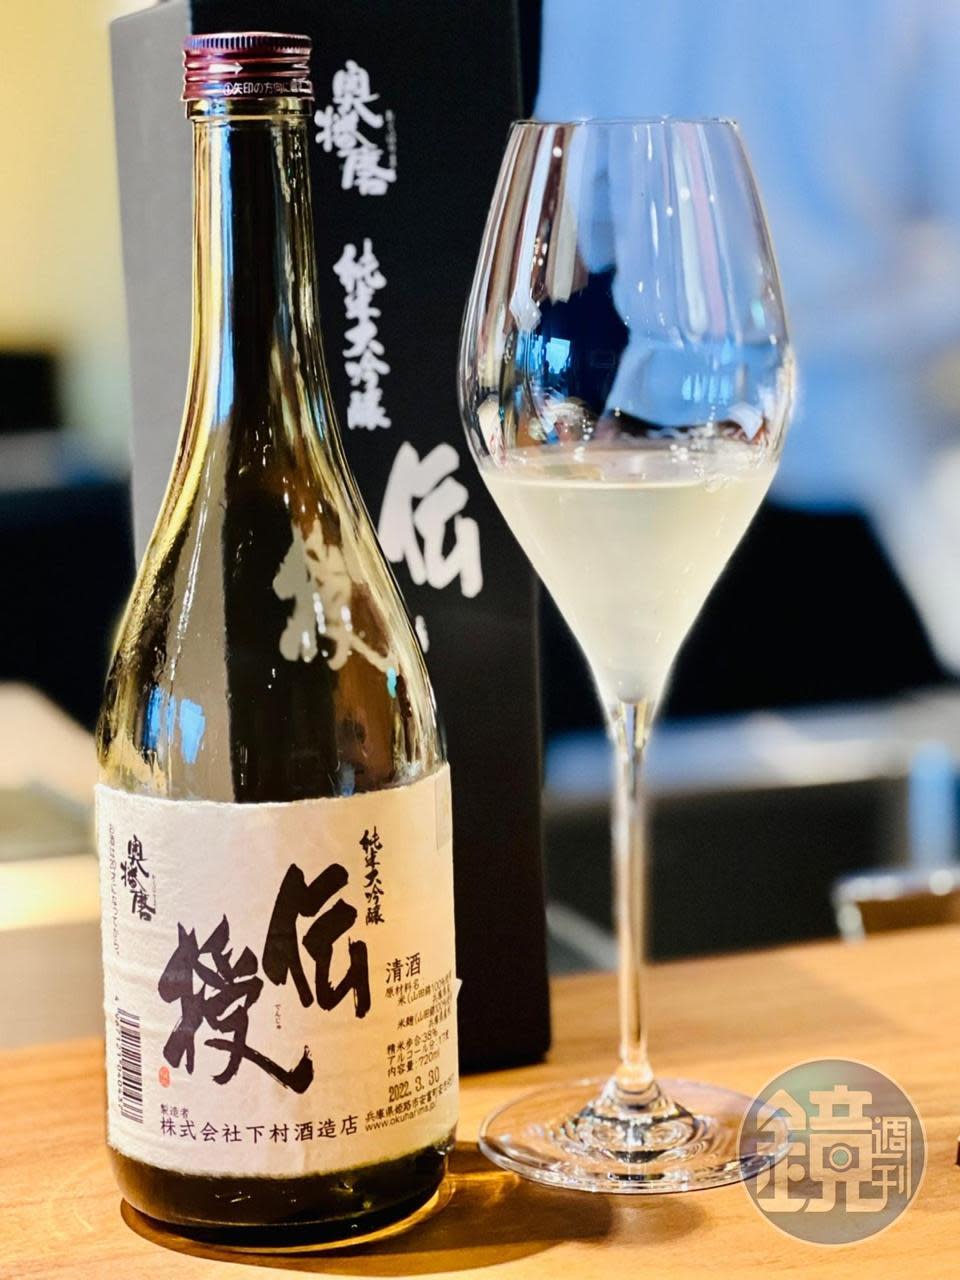 秋日和獨家清酒「奧播磨 傳授 純米大吟釀」可在不同溫度帶品嚐。